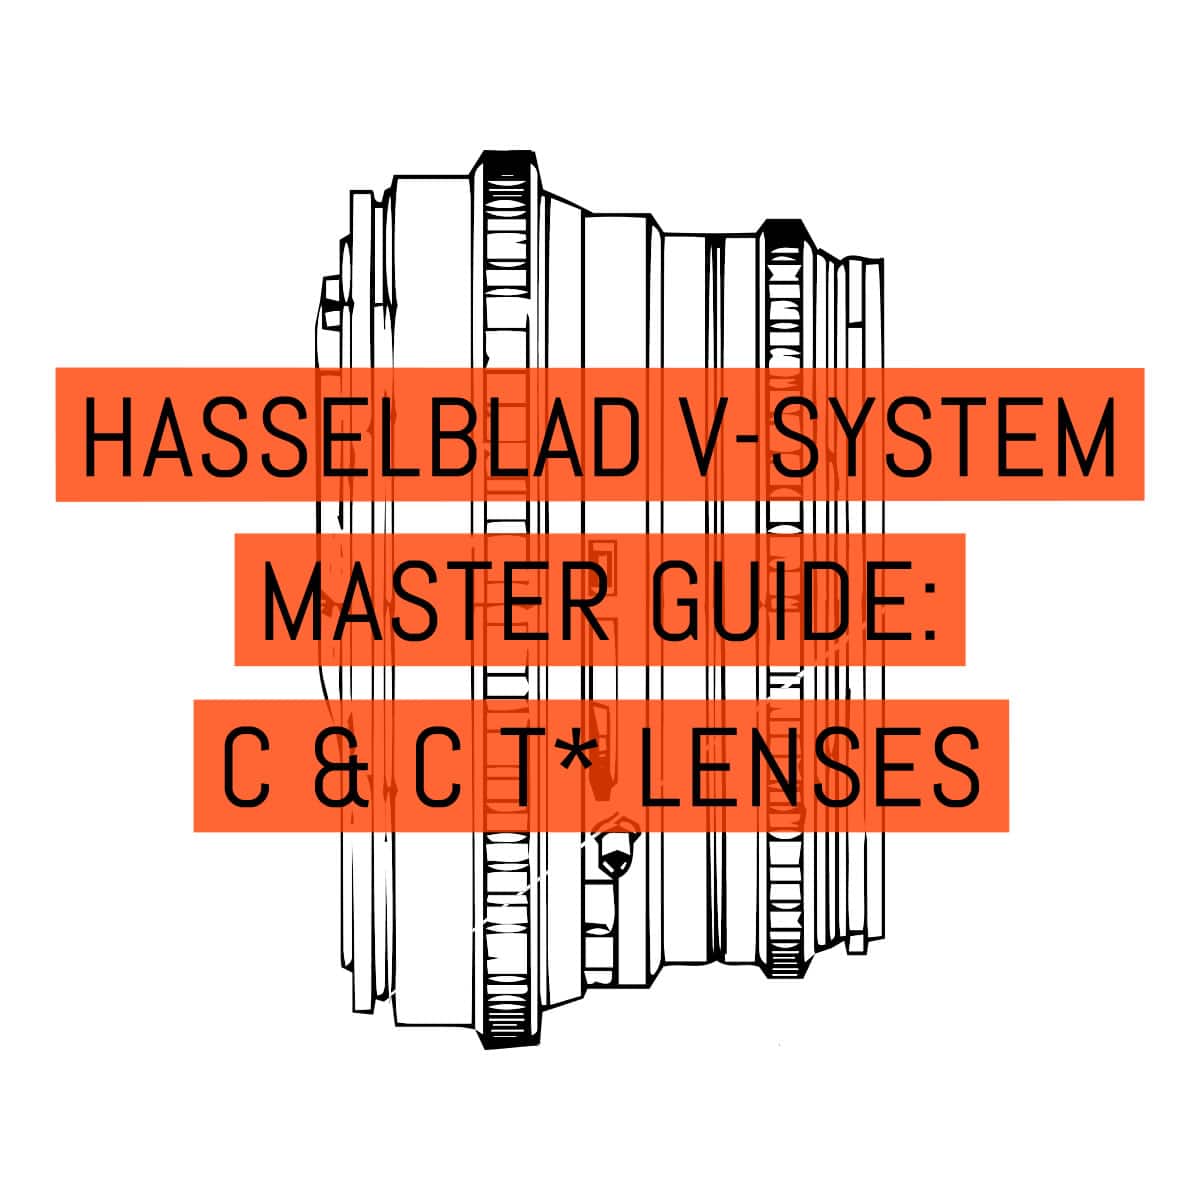 Hasselblad V-System Master Guide - Lenses C + CT* Lenses